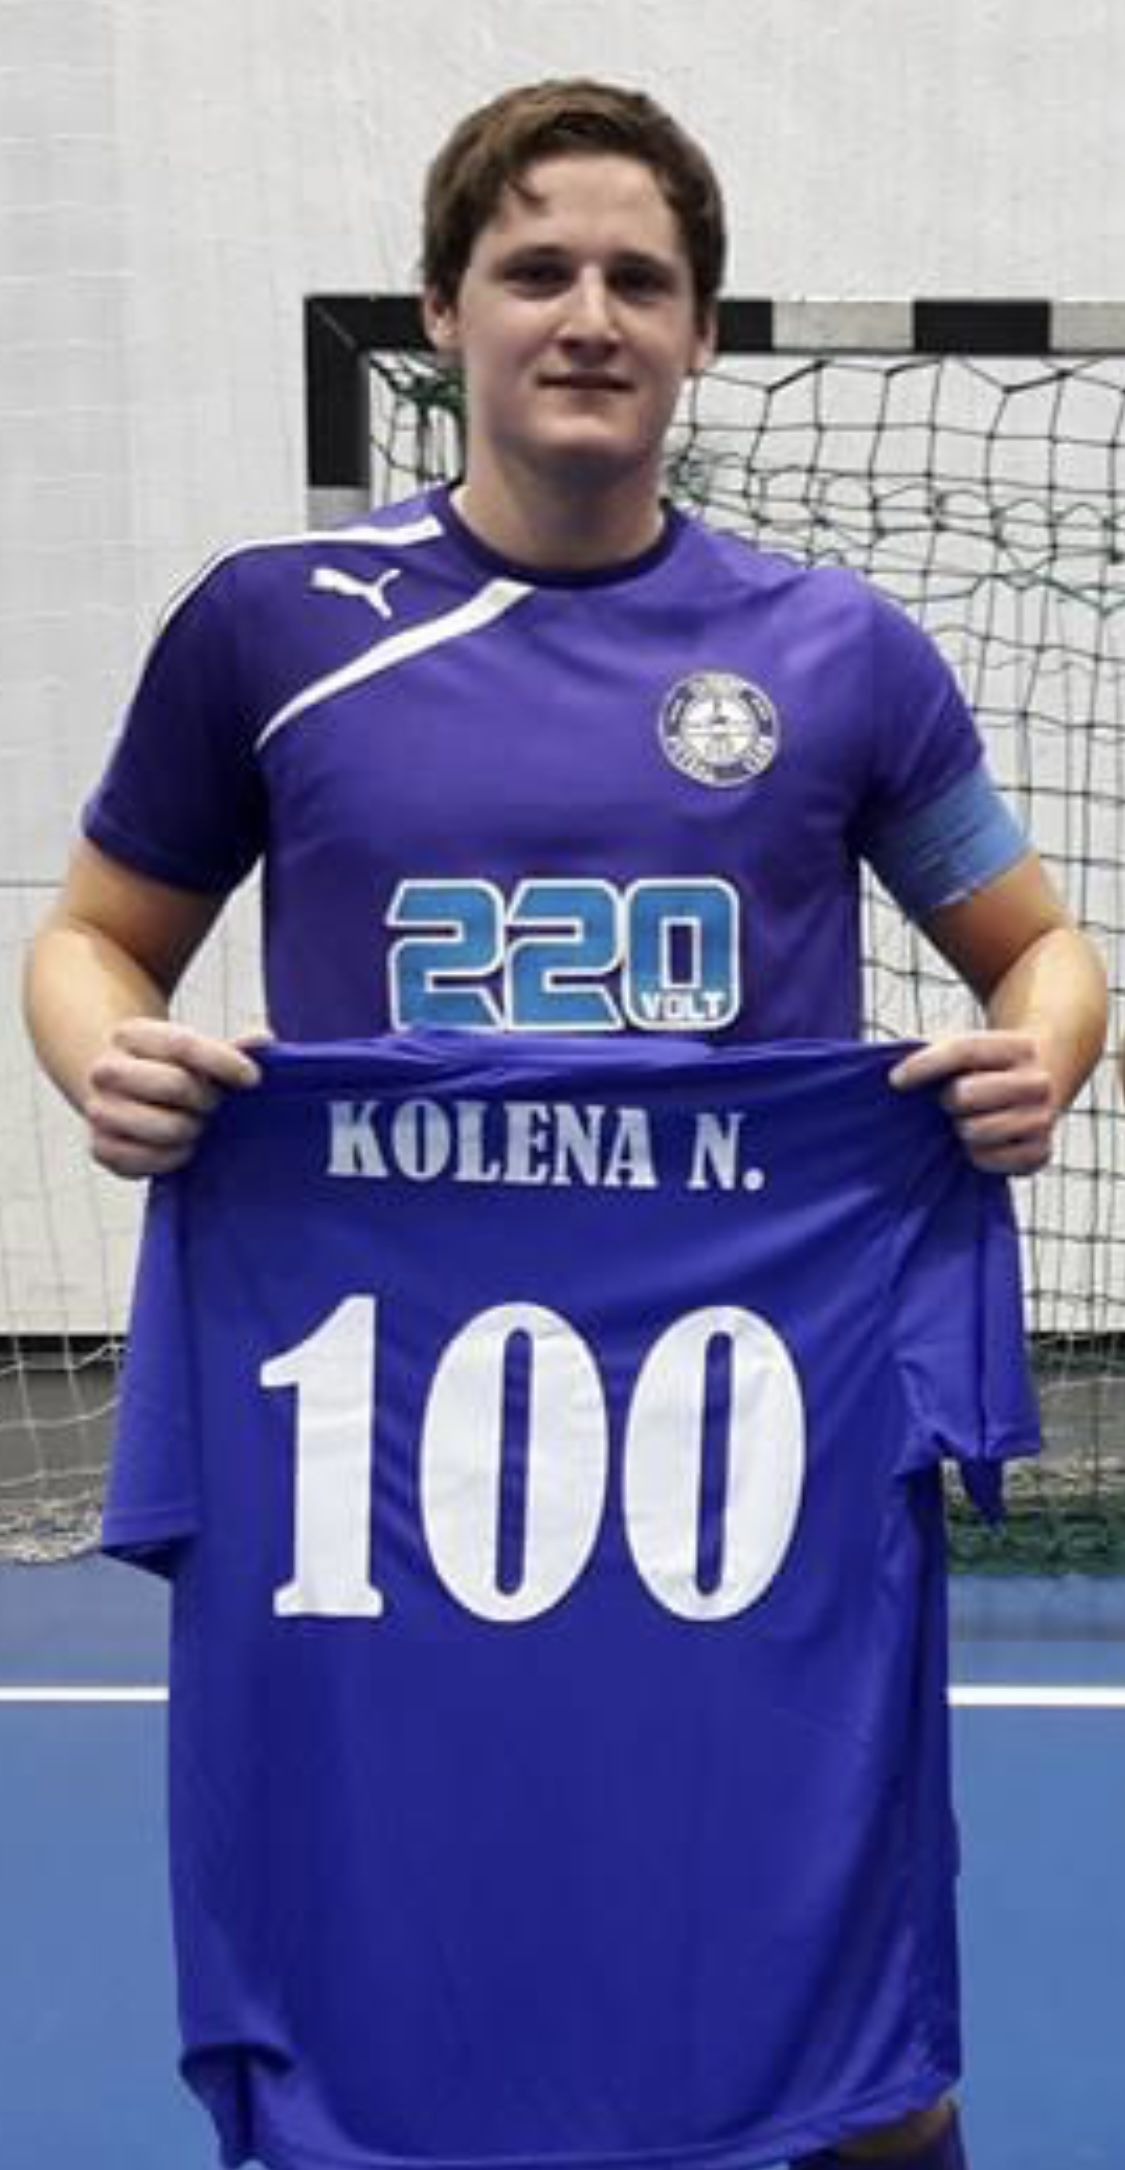 Kolena Norbert az újpesti futsalcsapat történetének legeredményesebb játékosa /Fotó: Újpest FC--220Volt